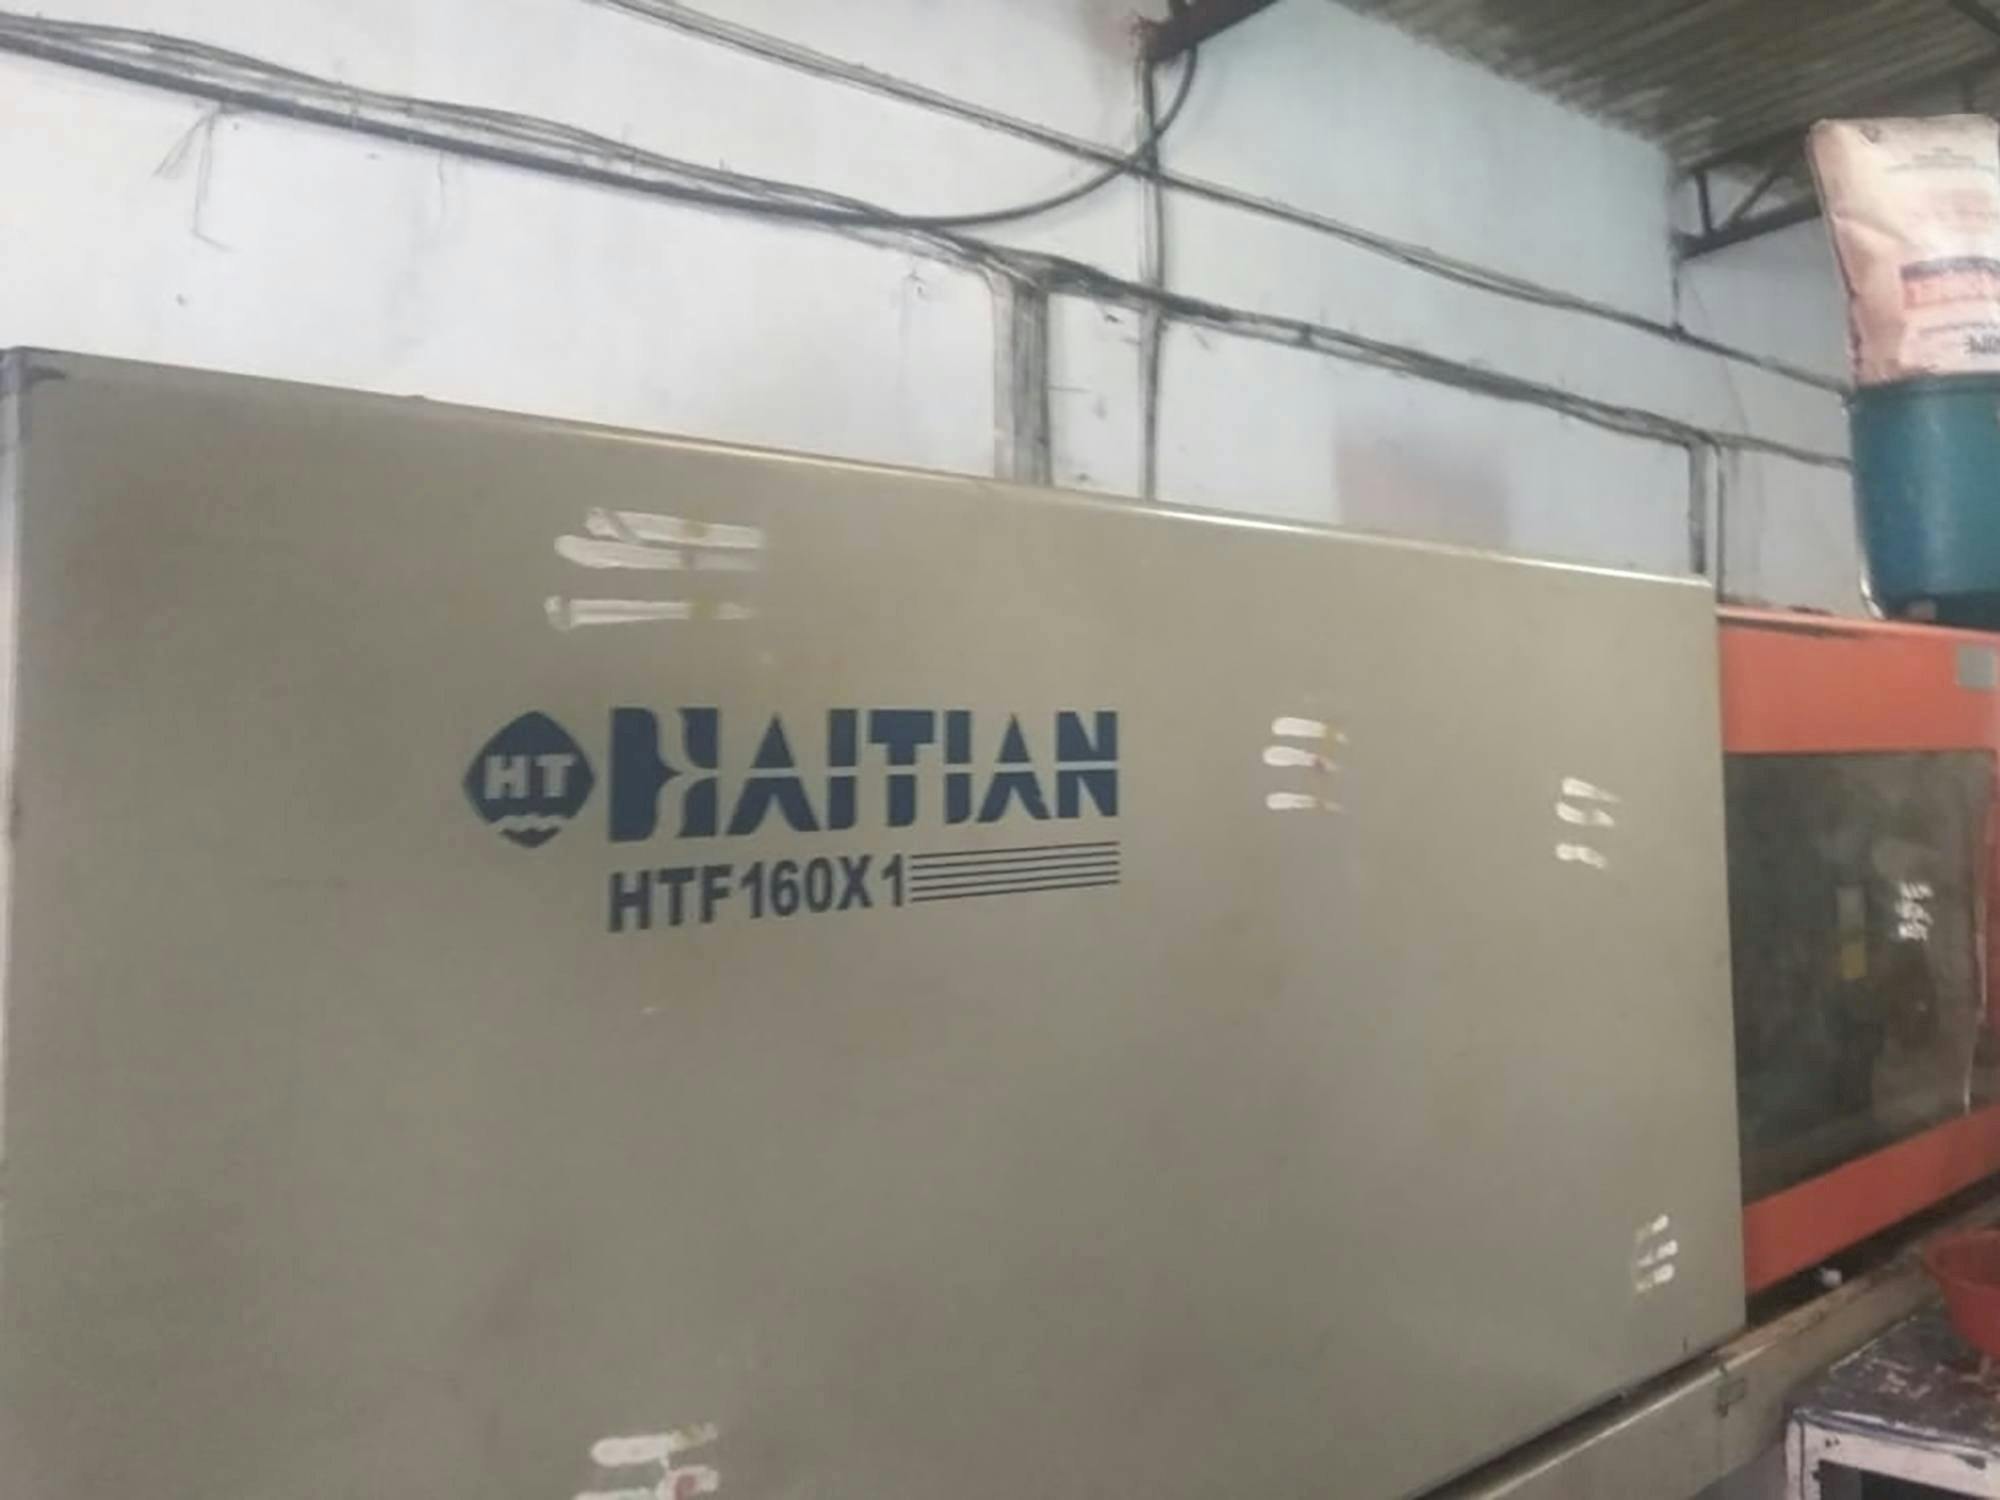 Widok z przodu maszyny HAITIAN HTF160X1